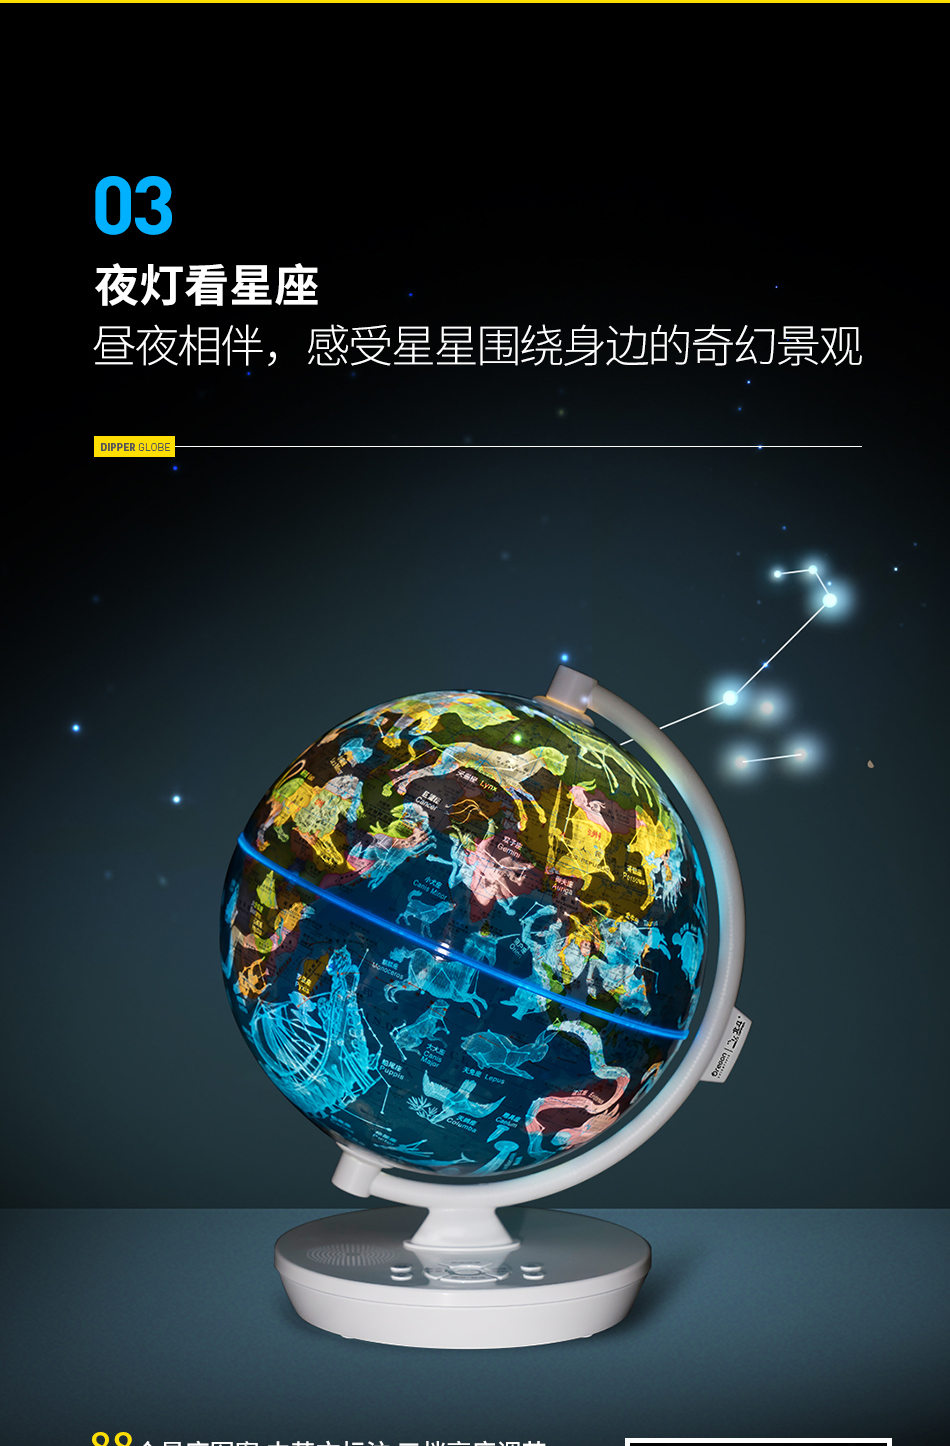 米乐|米乐·M6(China)官方网站_产品5234